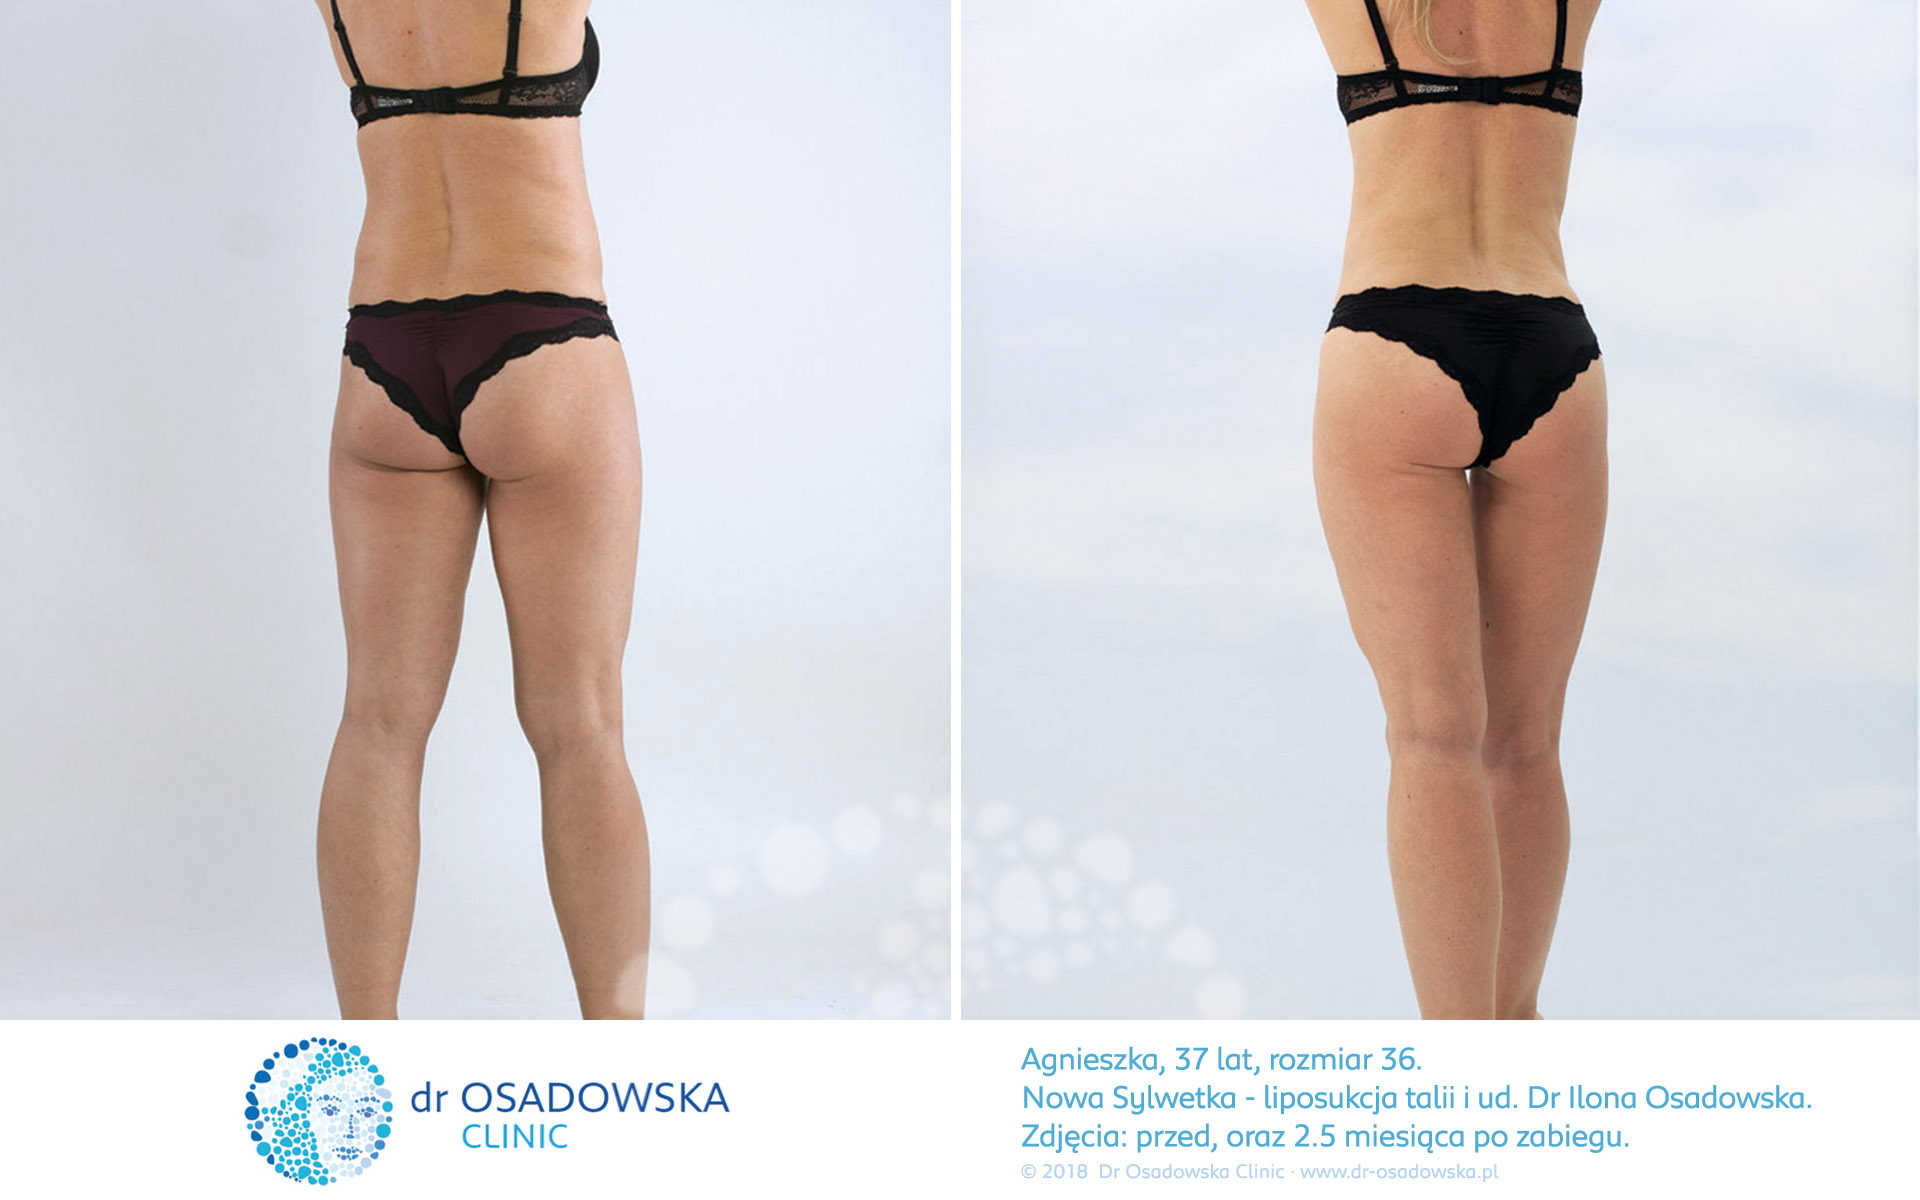 Liposukcja bioder, zdjęcia efekty przed i po zabiegu - 2,5 miesiąca. Lipolife, Dr Ilona Osadowska